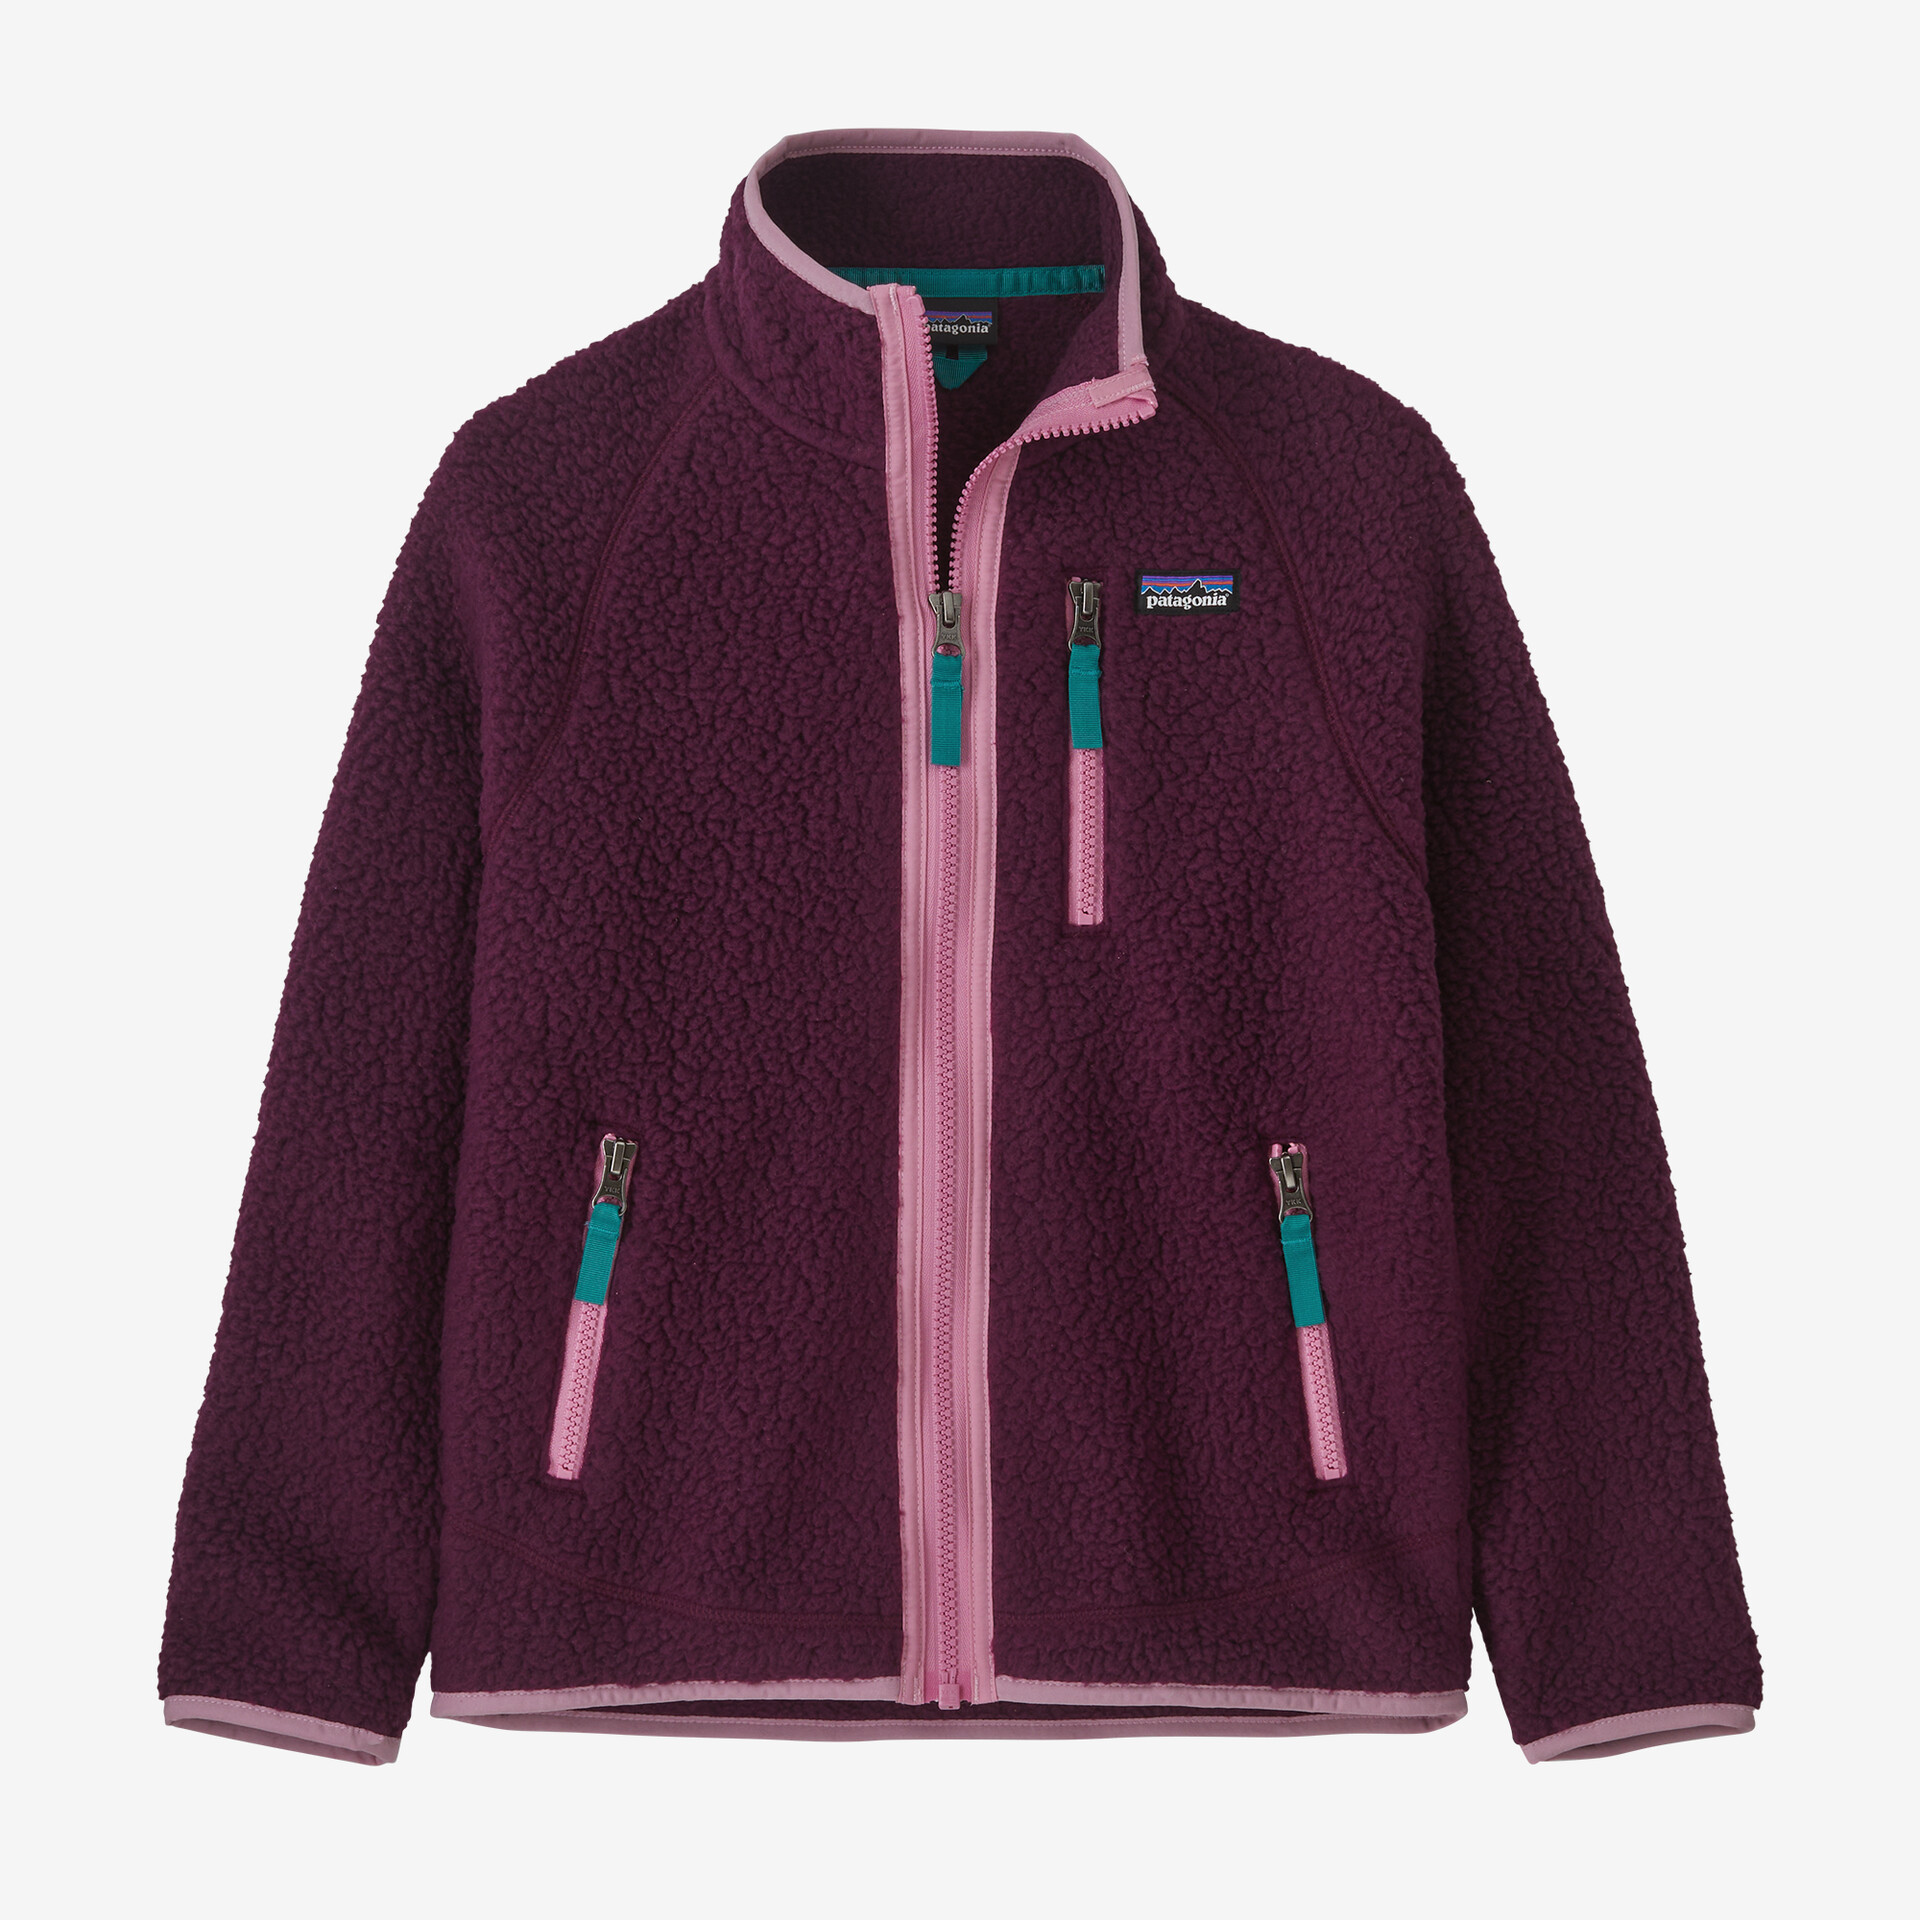 Детская флисовая куртка с ворсом в стиле ретро Patagonia, цвет Night Plum детский свитер флисовая куртка patagonia цвет night plum